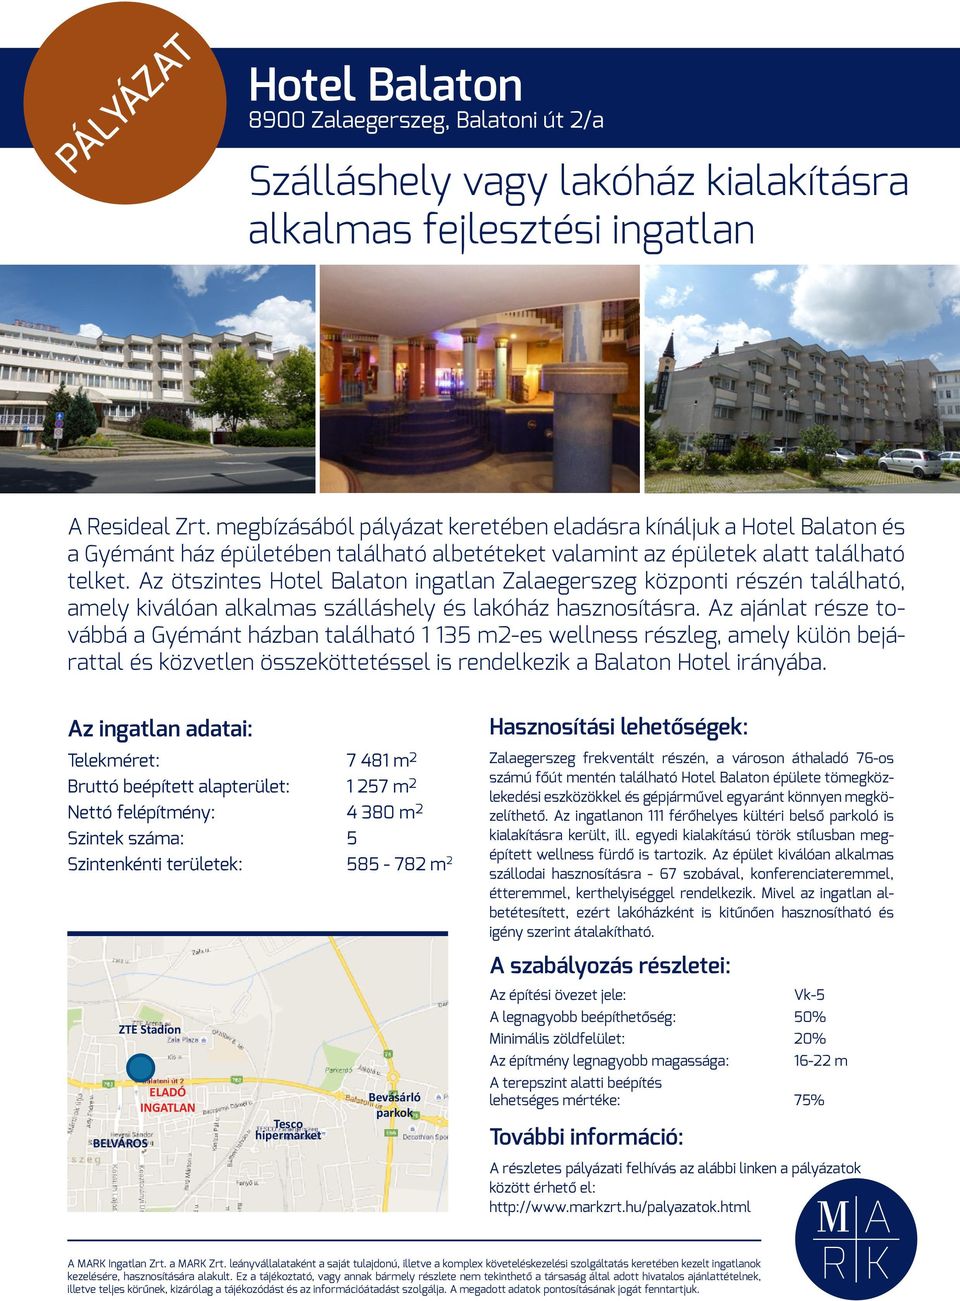 Az ötszintes Hotel Balaton ingatlan Zalaegerszeg központi részén található, amely kiválóan alkalmas szálláshely és lakóház hasznosításra.